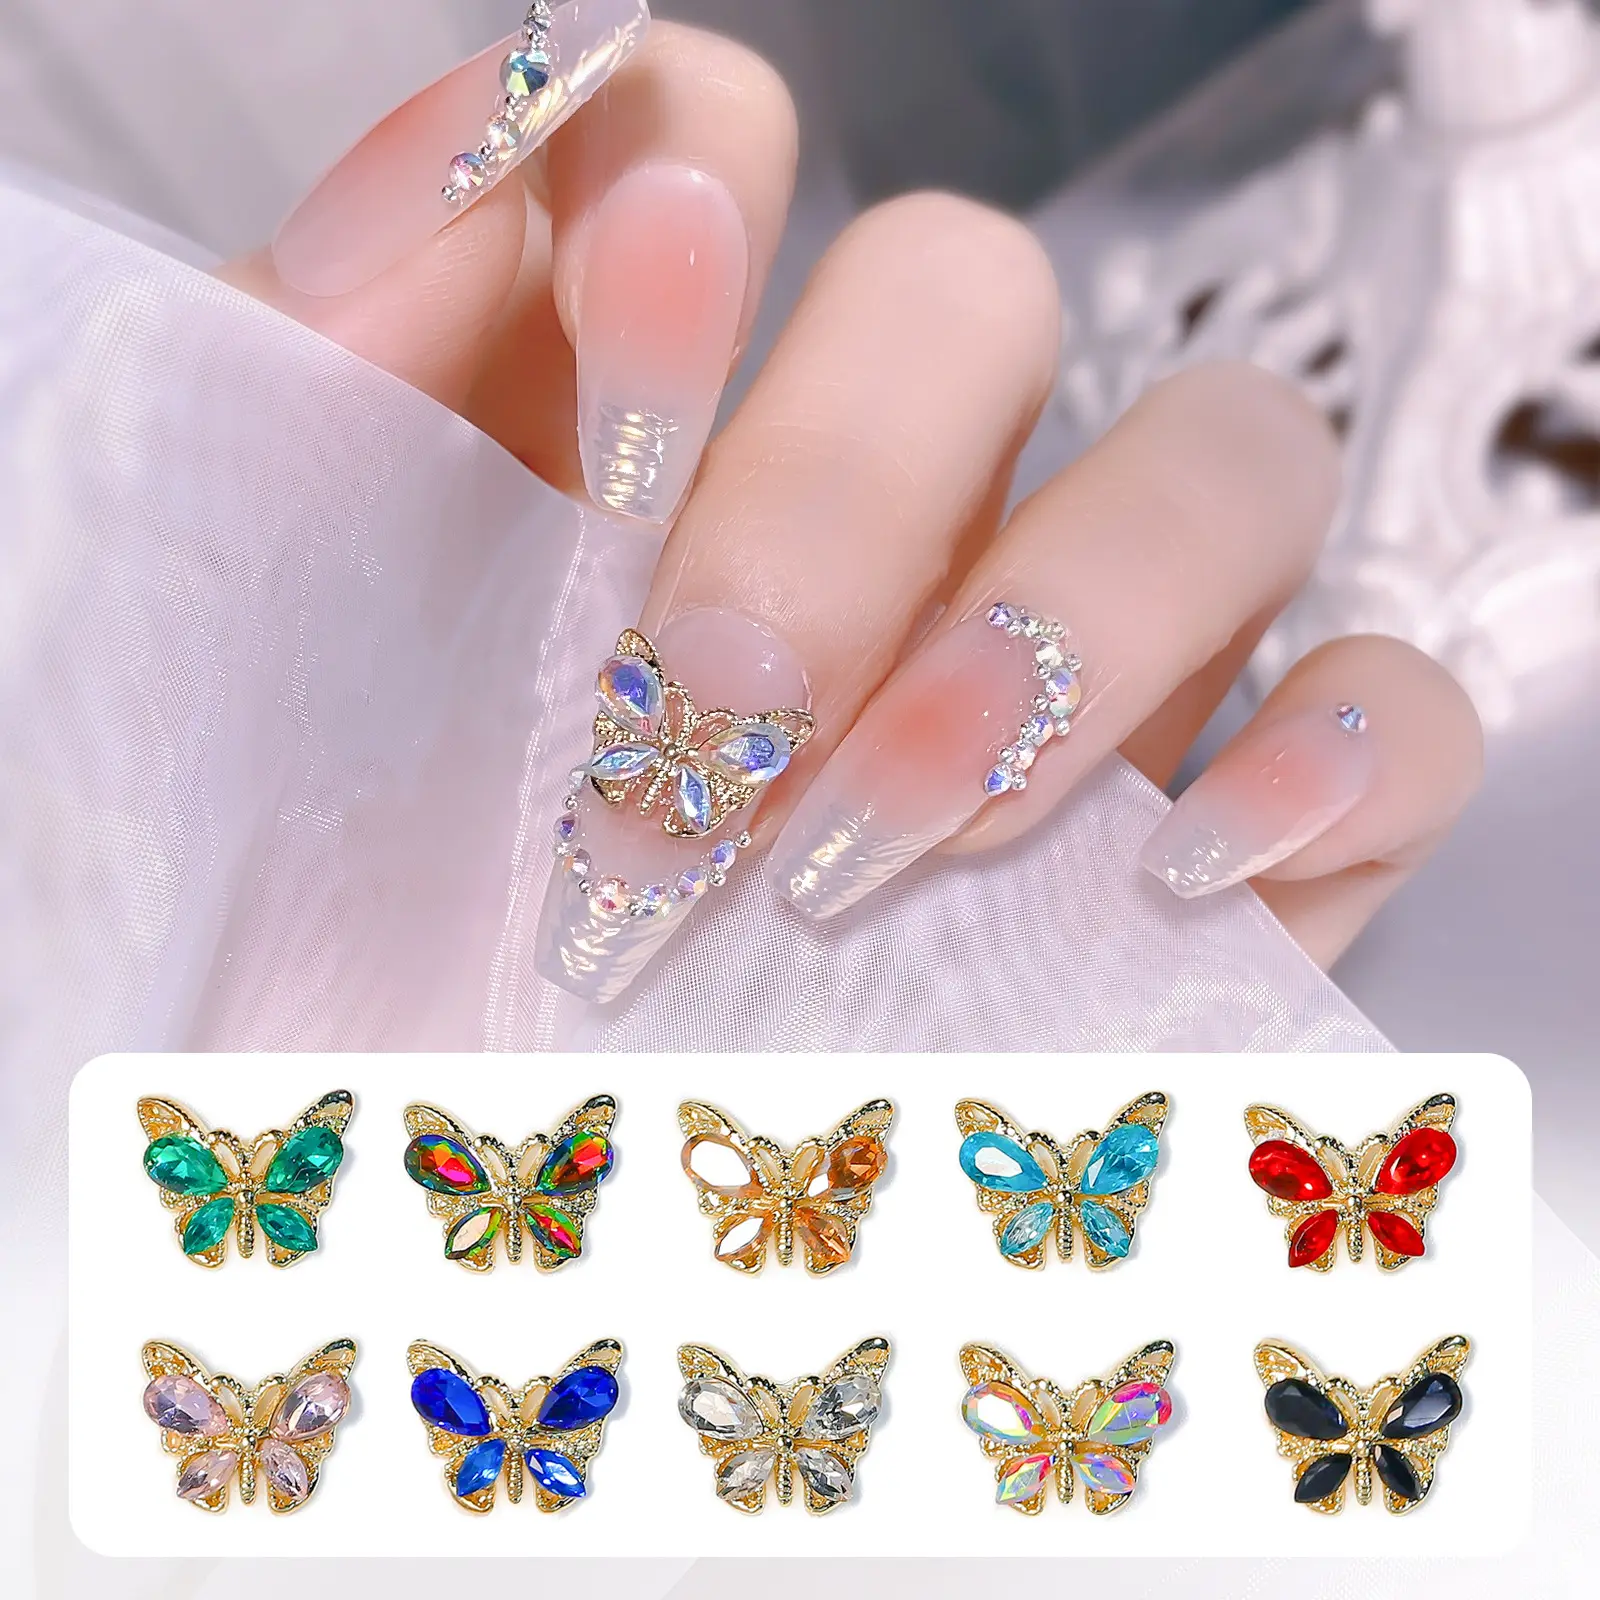 Neues Produkt 3D Schmetterling Schmuck Kristall nägel Kunst Strass Super Glitter Nagel dekoration für Nail Art Stickers Decals